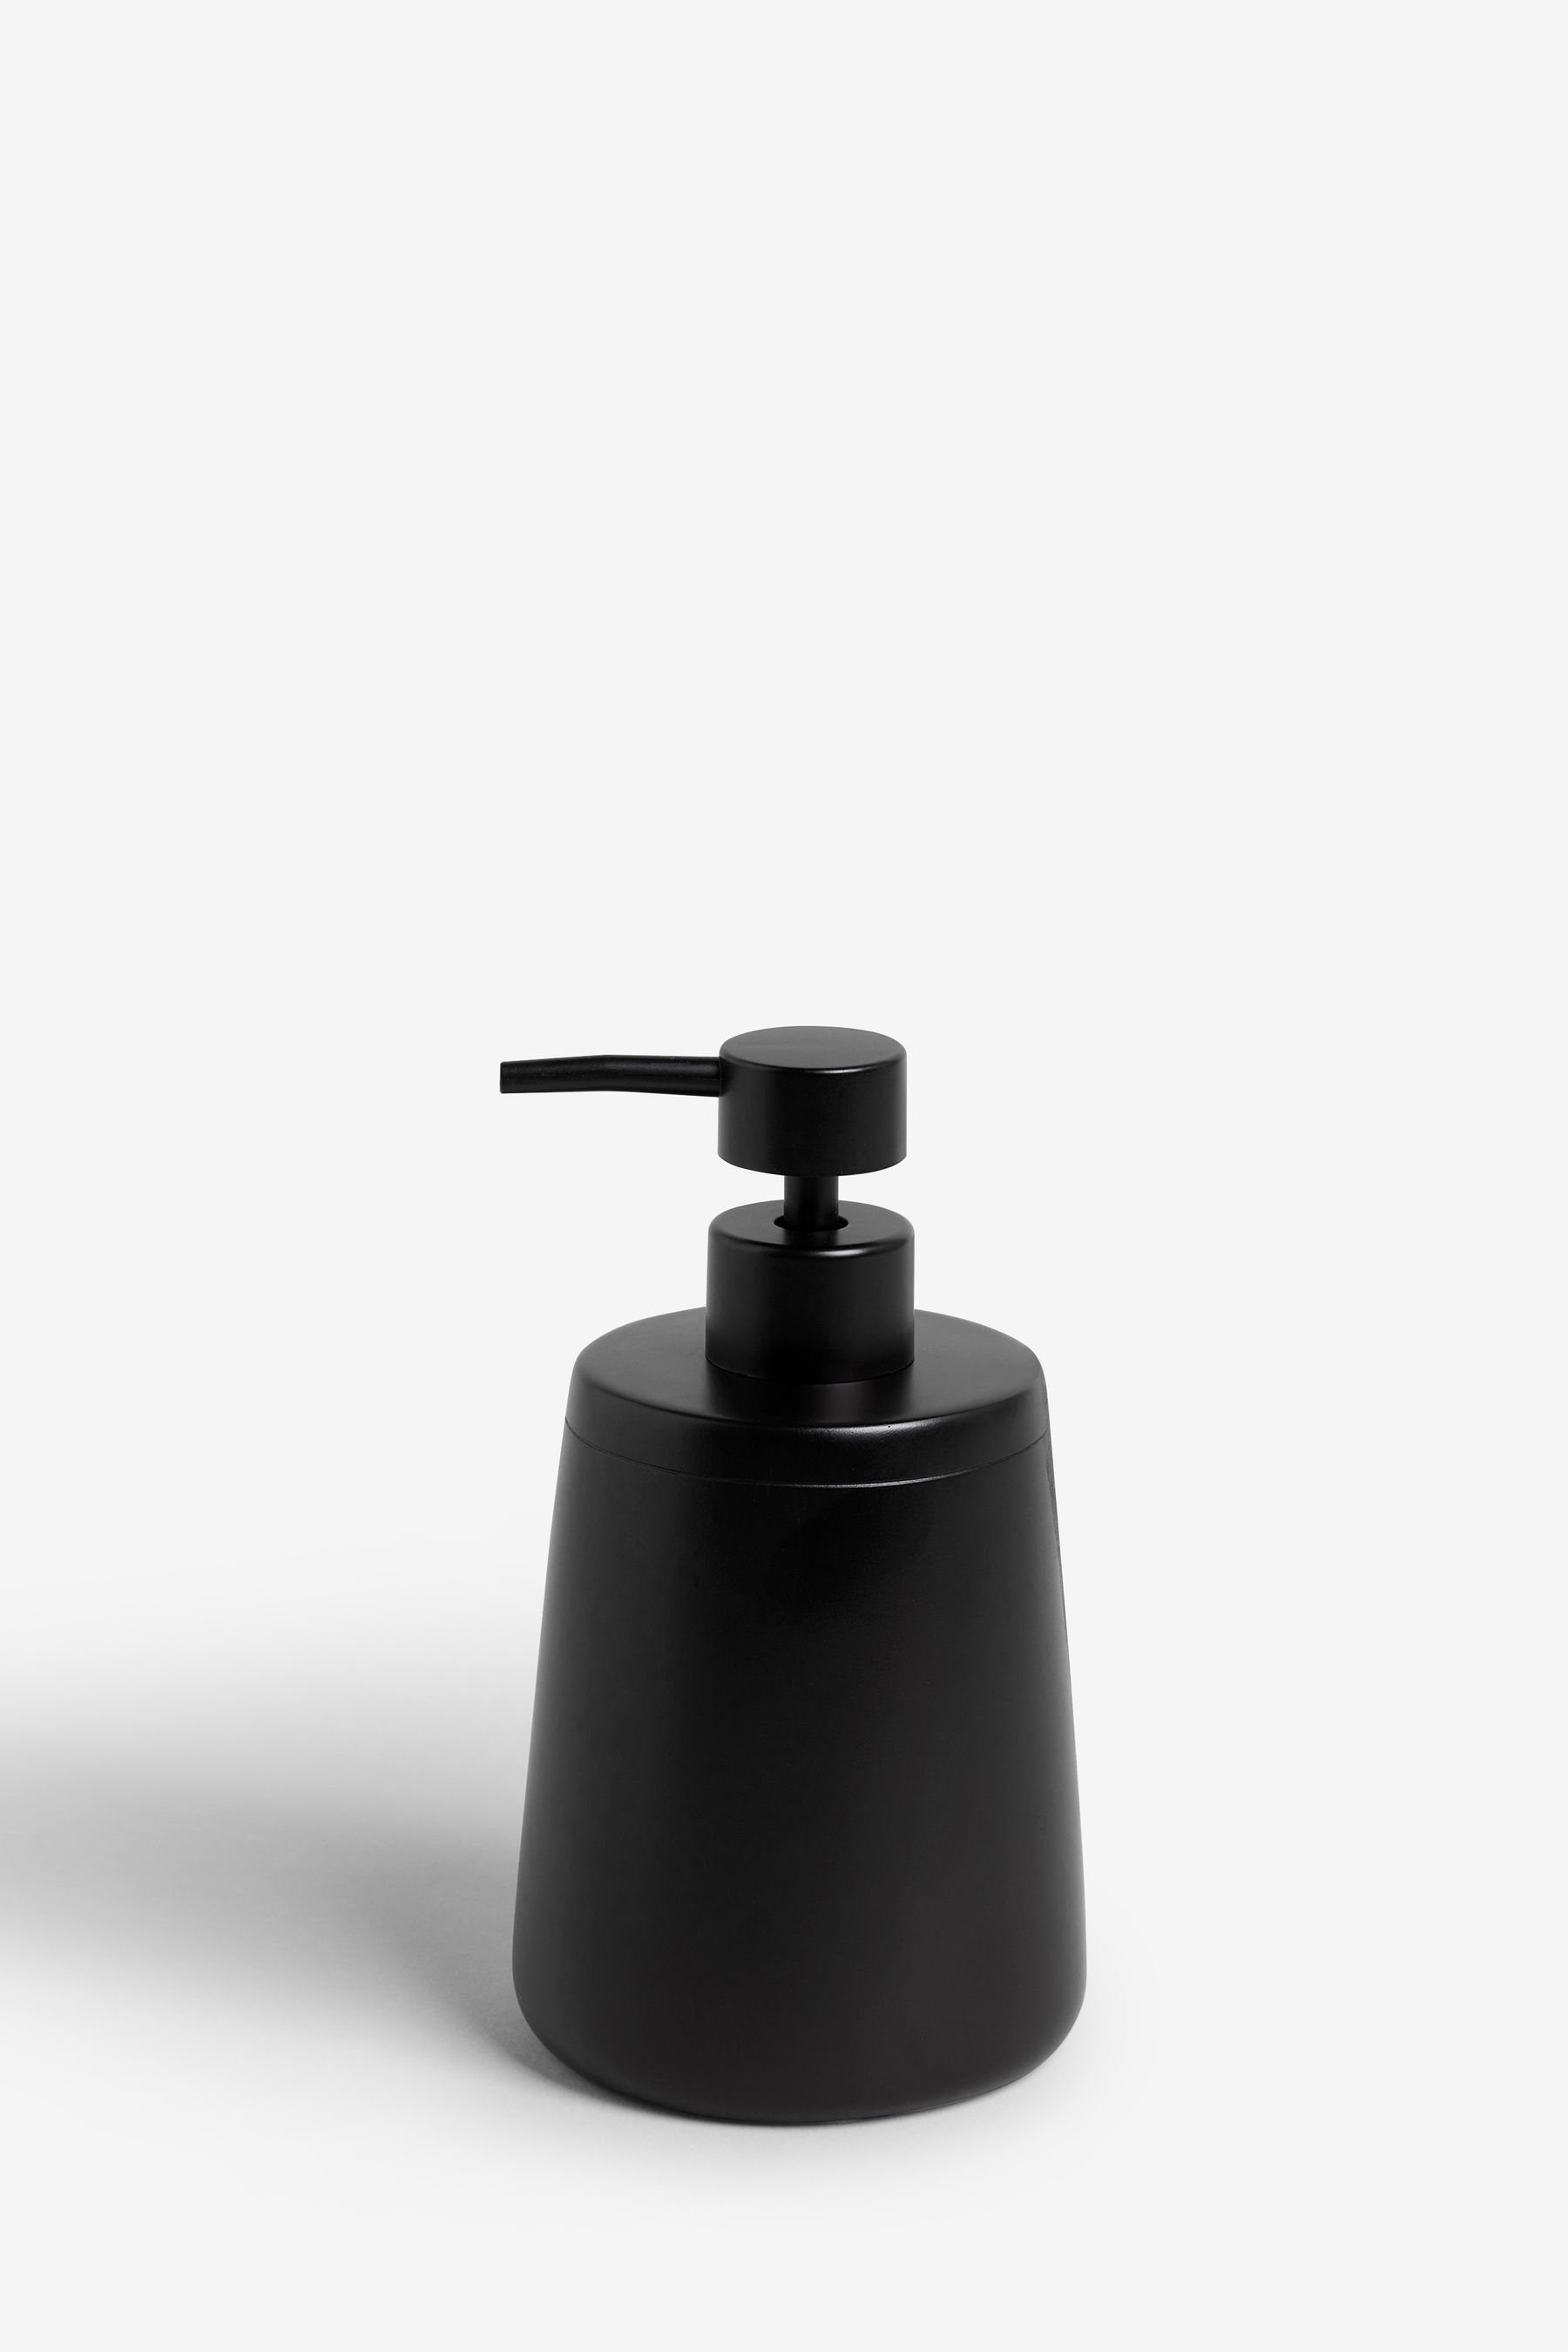 Next Seifenspender Black Moderna Soap Dispenser